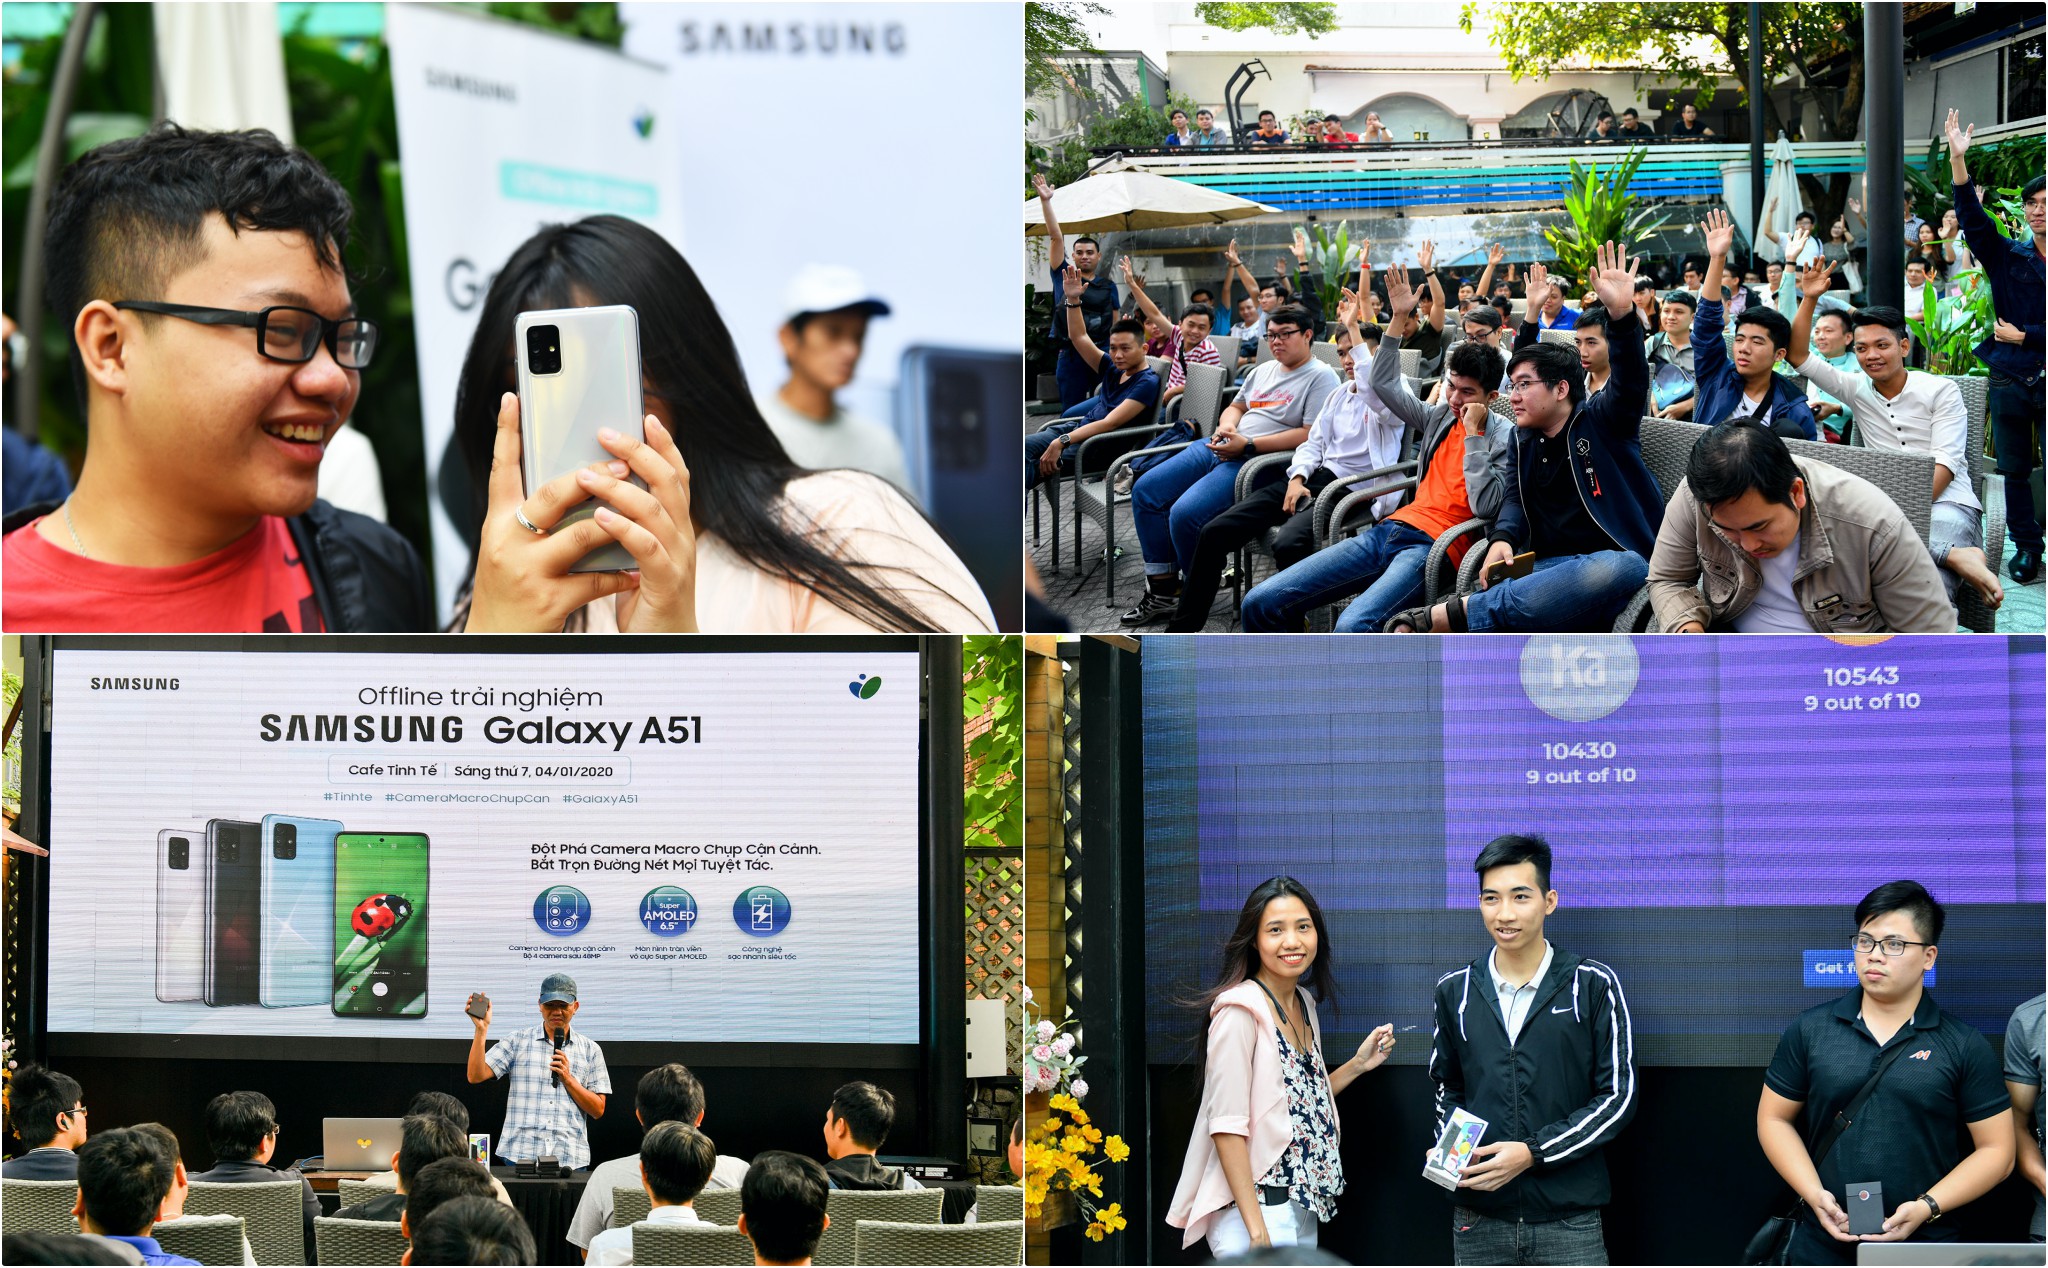 Hình ảnh & video buổi offline Samsung Galaxy A51 tại Cafe Tinh tế